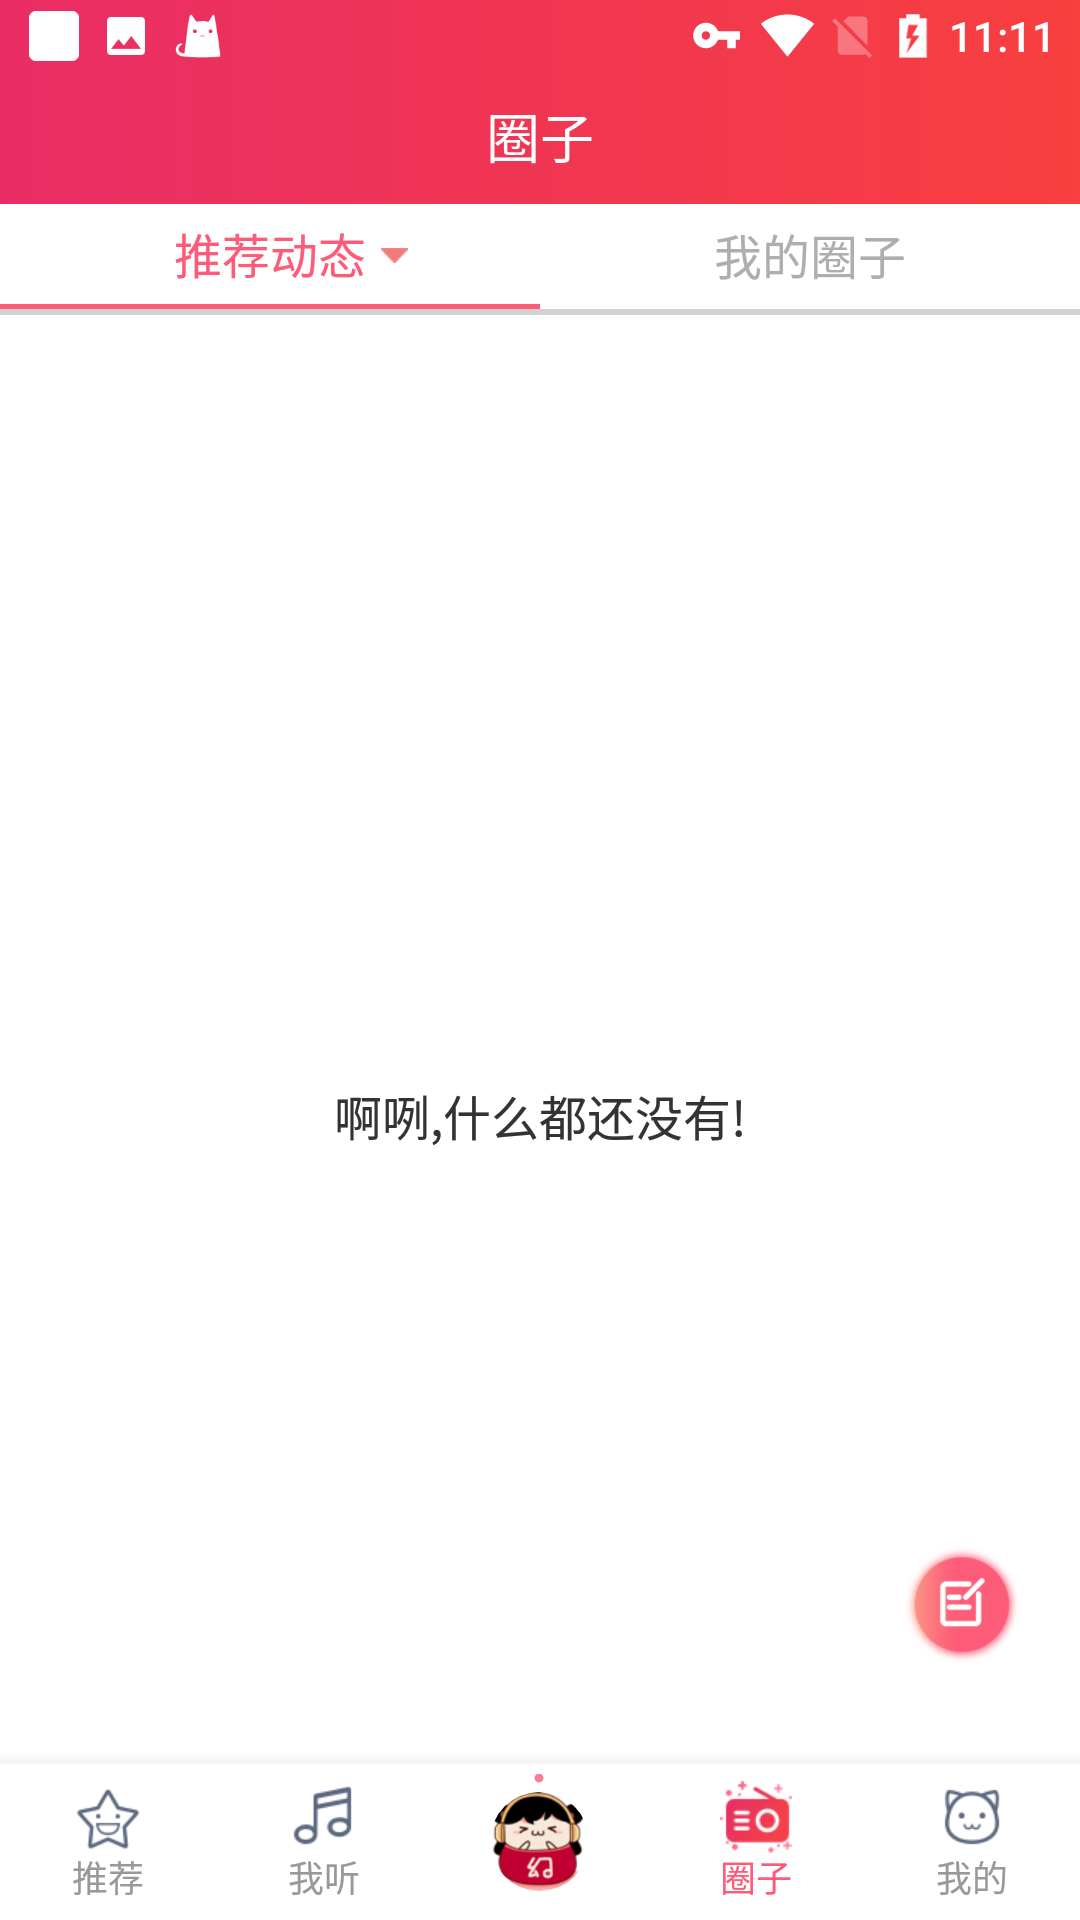 幻音音乐广播剧腐肉音频app下载v3.10.11截图1